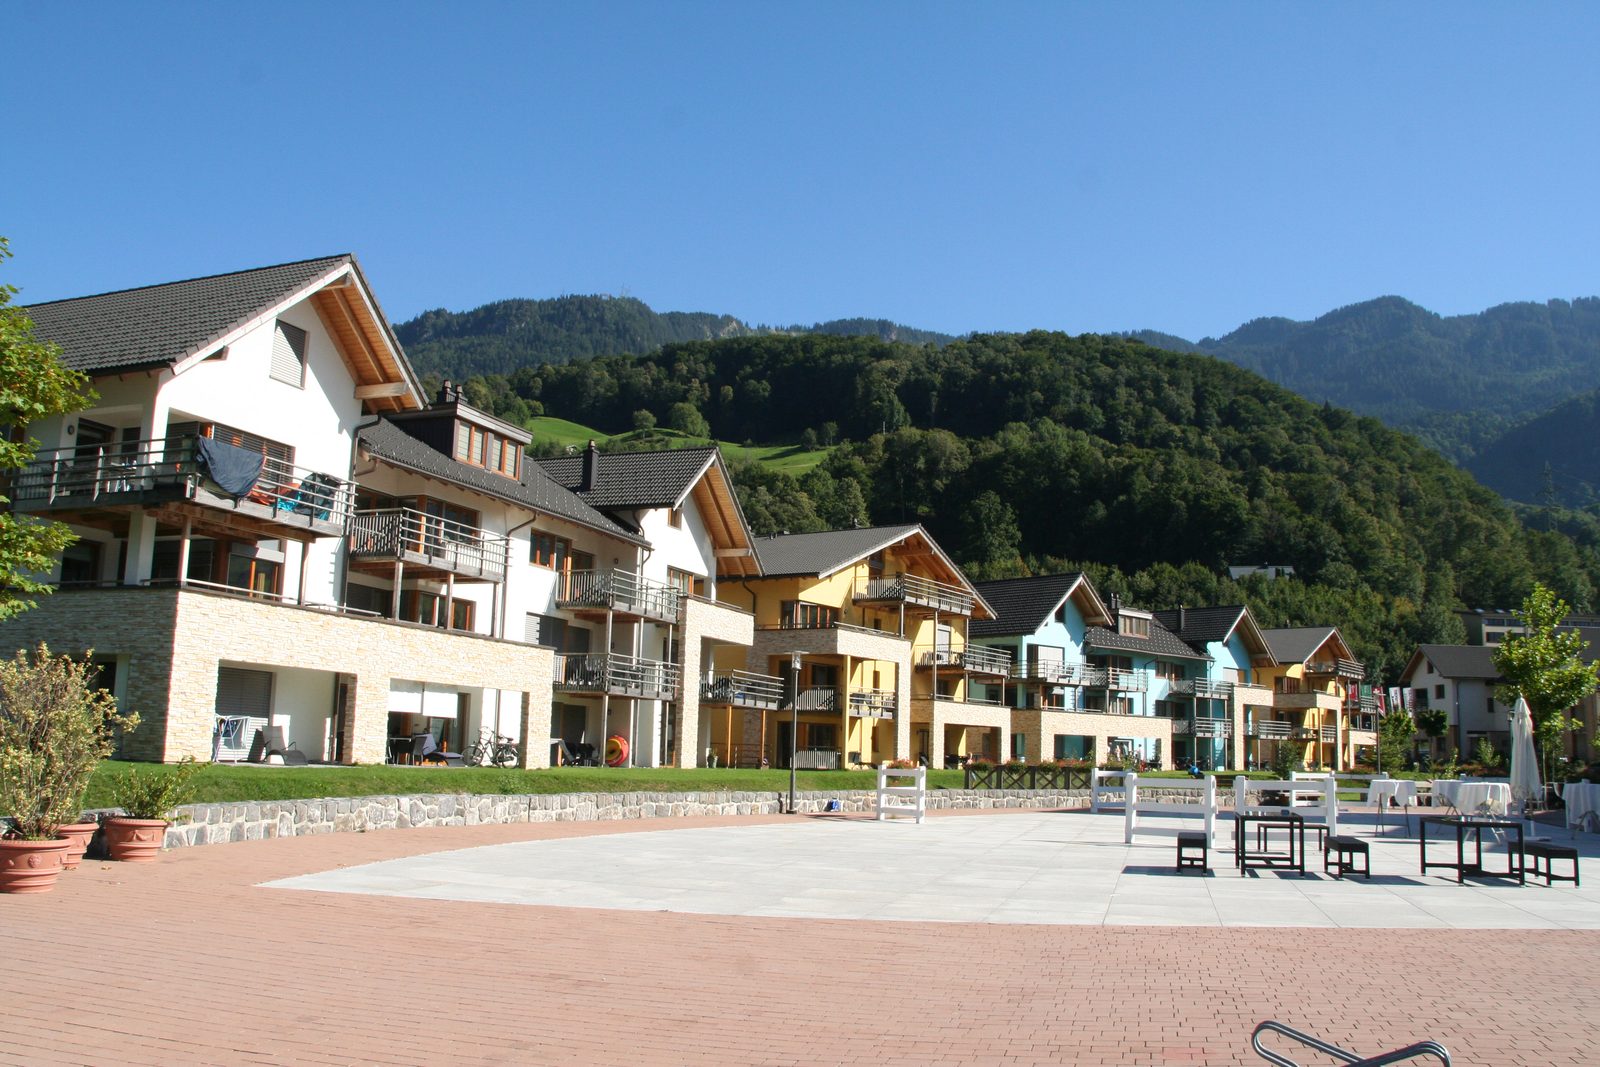 Appartementen aan het dorpsplein van Resort Walensee in Heidiland Flumserberg Zwitserland tijdens de voorjaarsvakantie